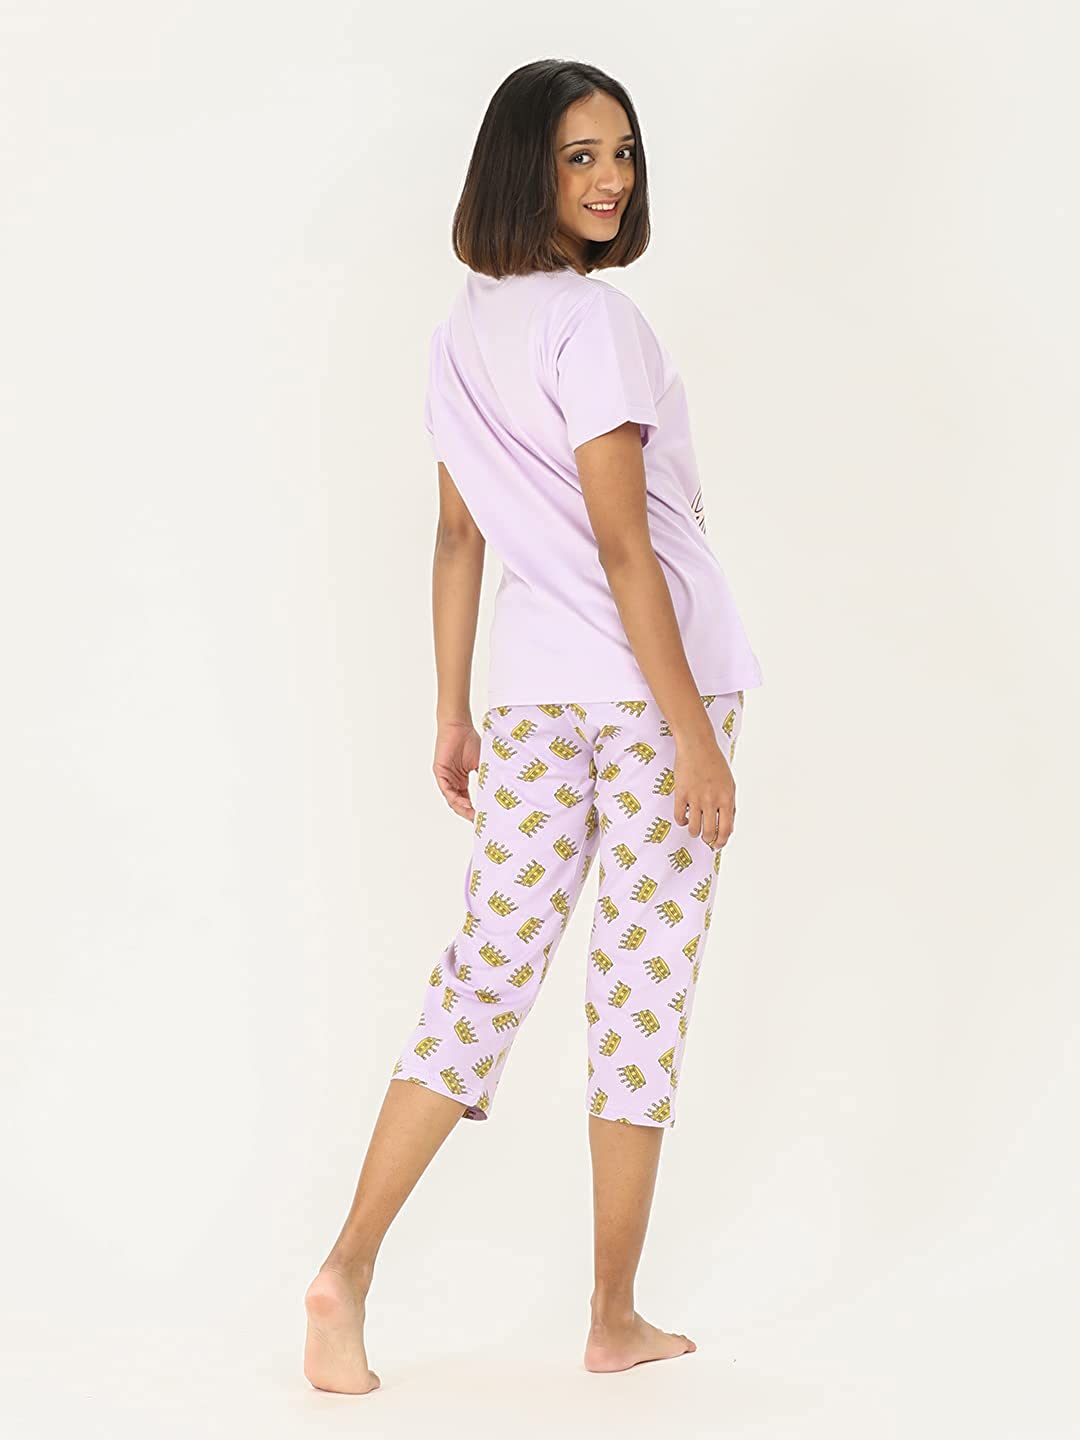 Cotton Pyjamas women capri pant set (Top+Bottom) Singlet and Capri pant  Sleepwear Loungewear Nightwear Ladies Pajamas | Shopee Malaysia